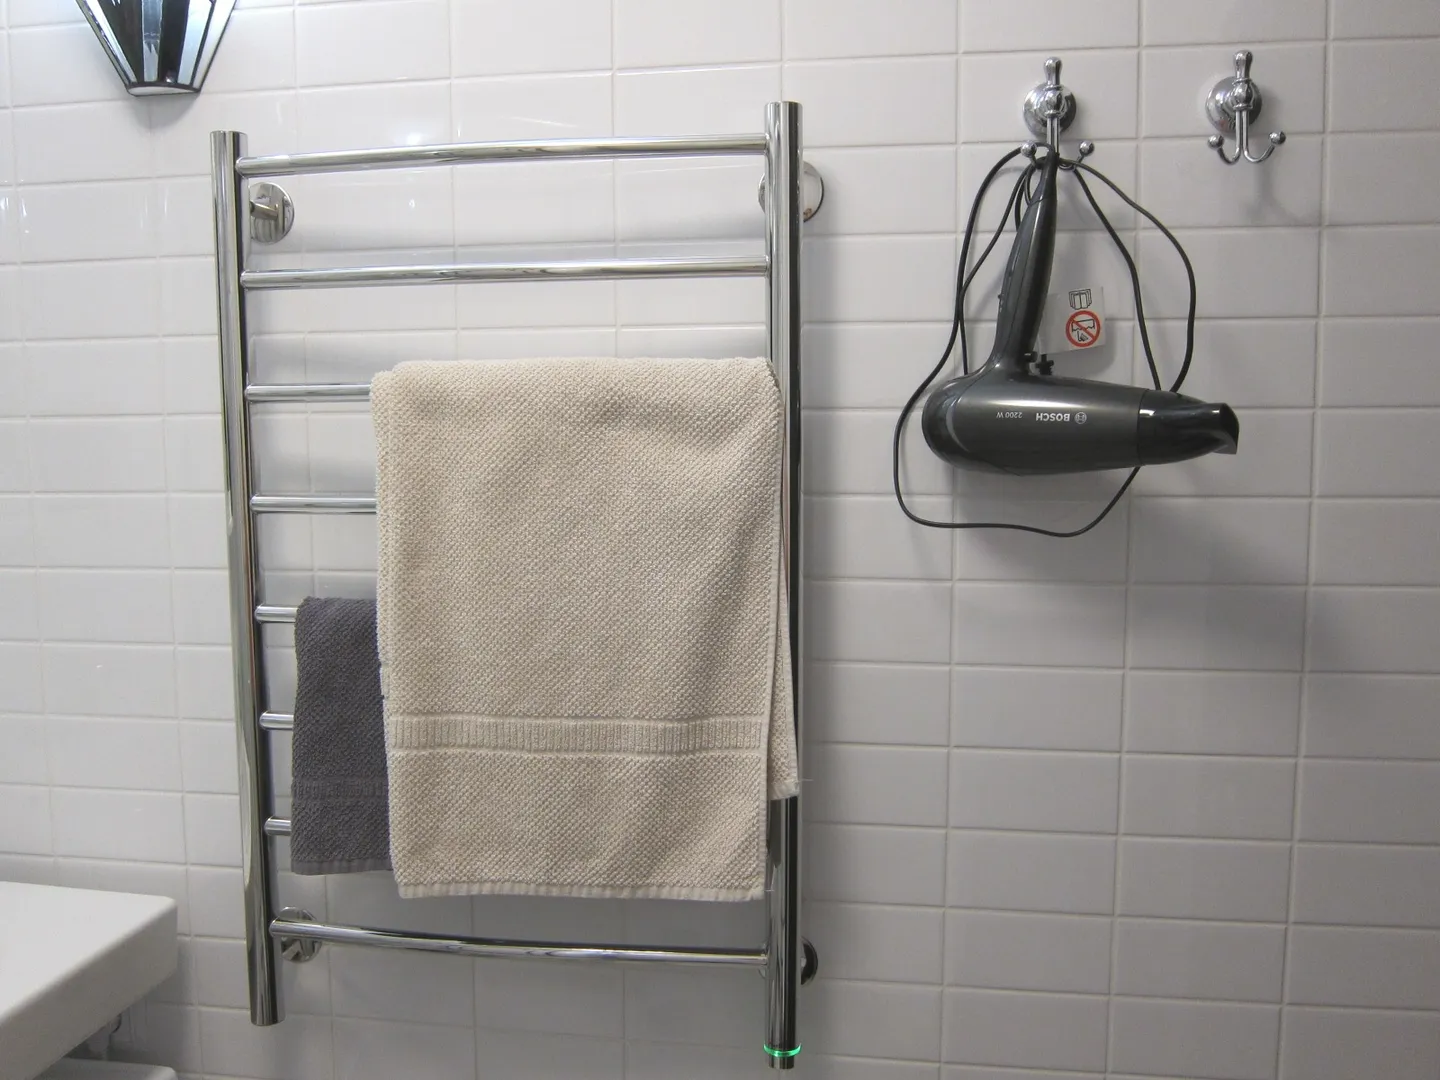 Электрический полотенцесушитель и фен в ванной комнате.